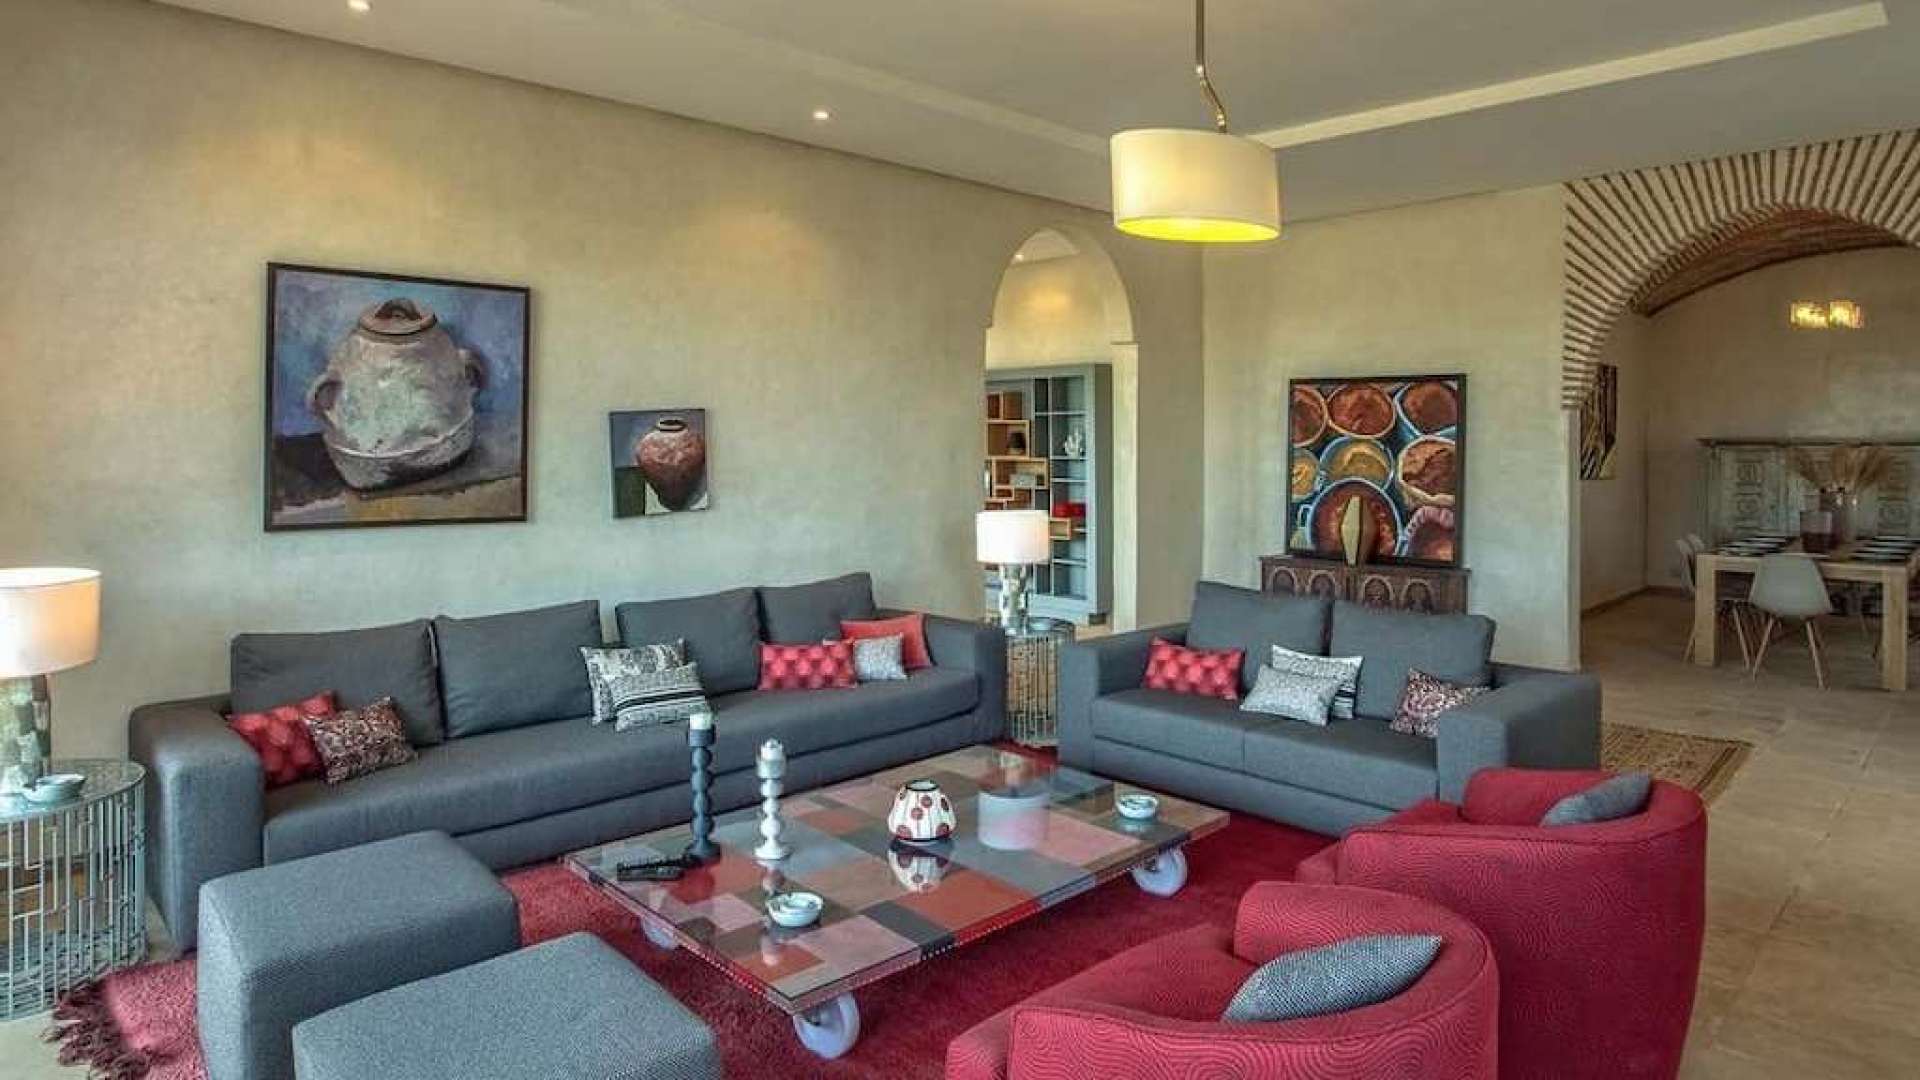 Location de vacances,Villa,Location de vacances villa de luxe 5 suites sur golf  à Marrakech,Marrakech,Golf Samanah